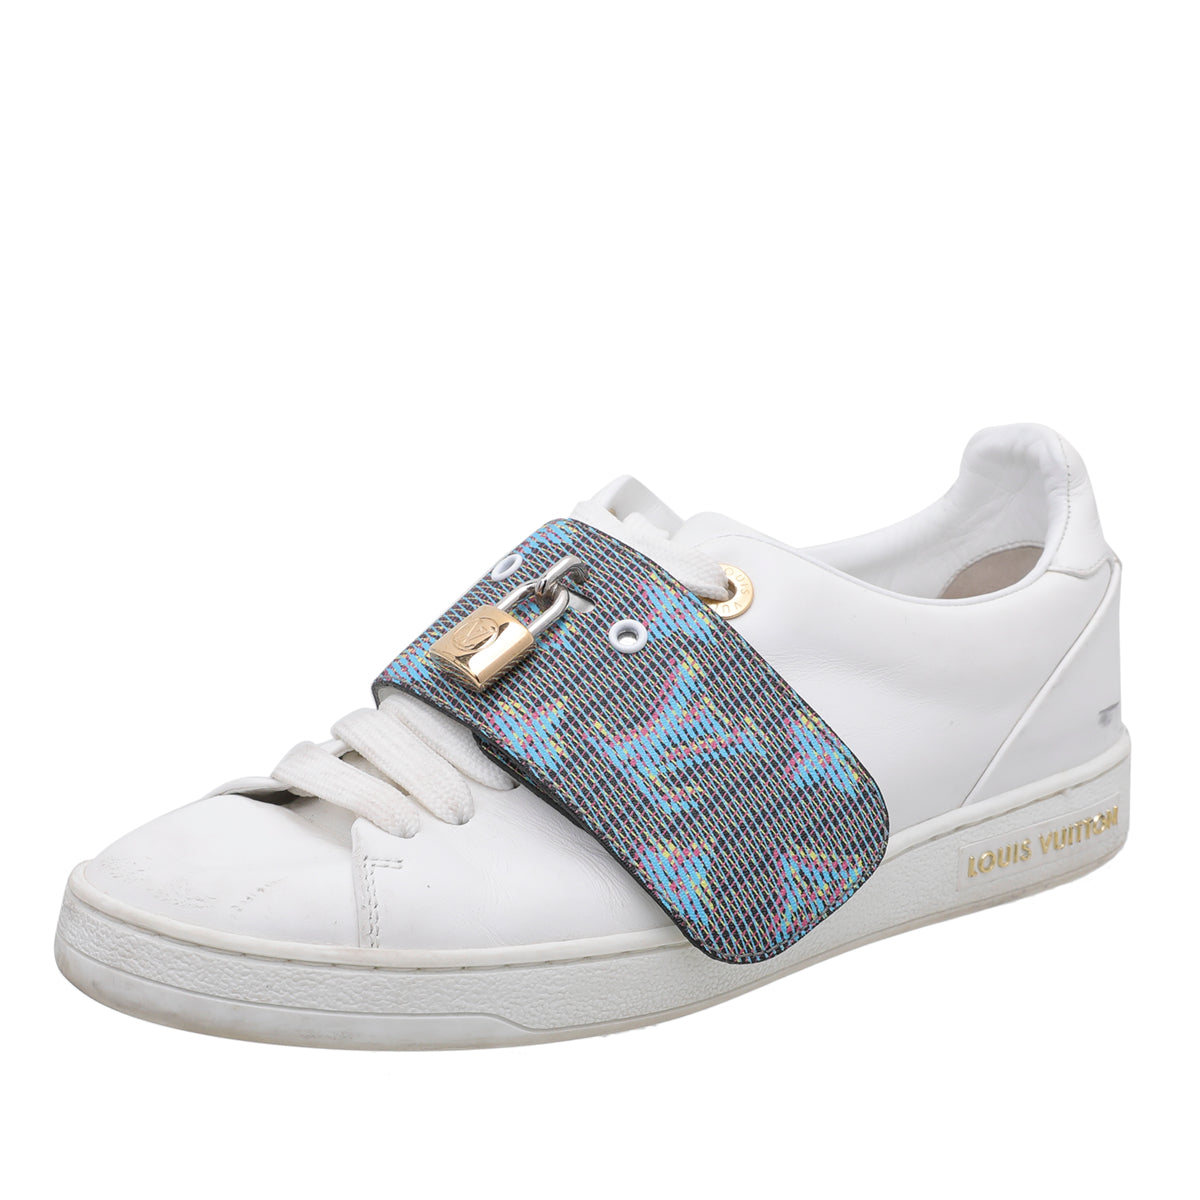 Louis Vuitton 1A2XOM FRONTROW Sneaker, White, 42